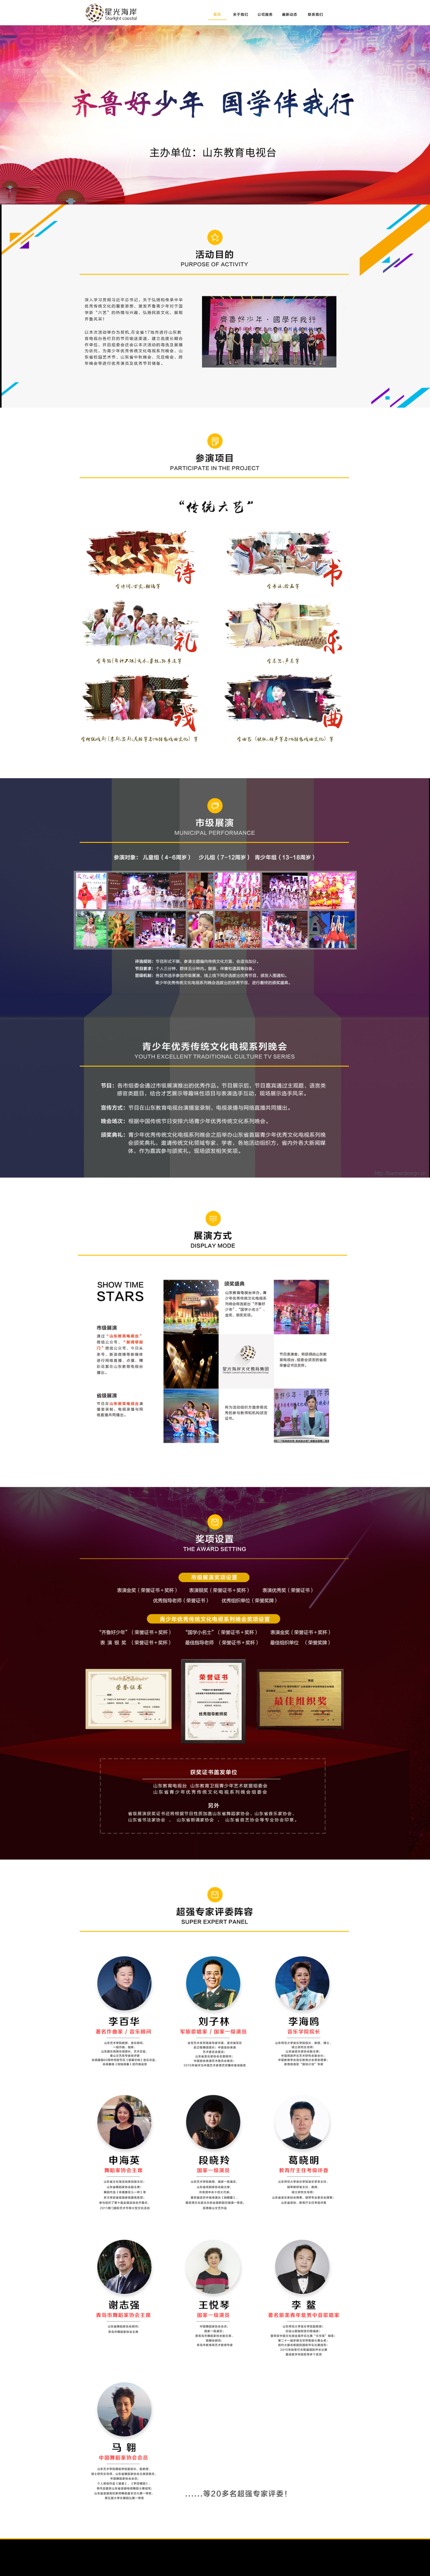 淘宝美工小陆design文化传媒公司活动官方网站建设作品